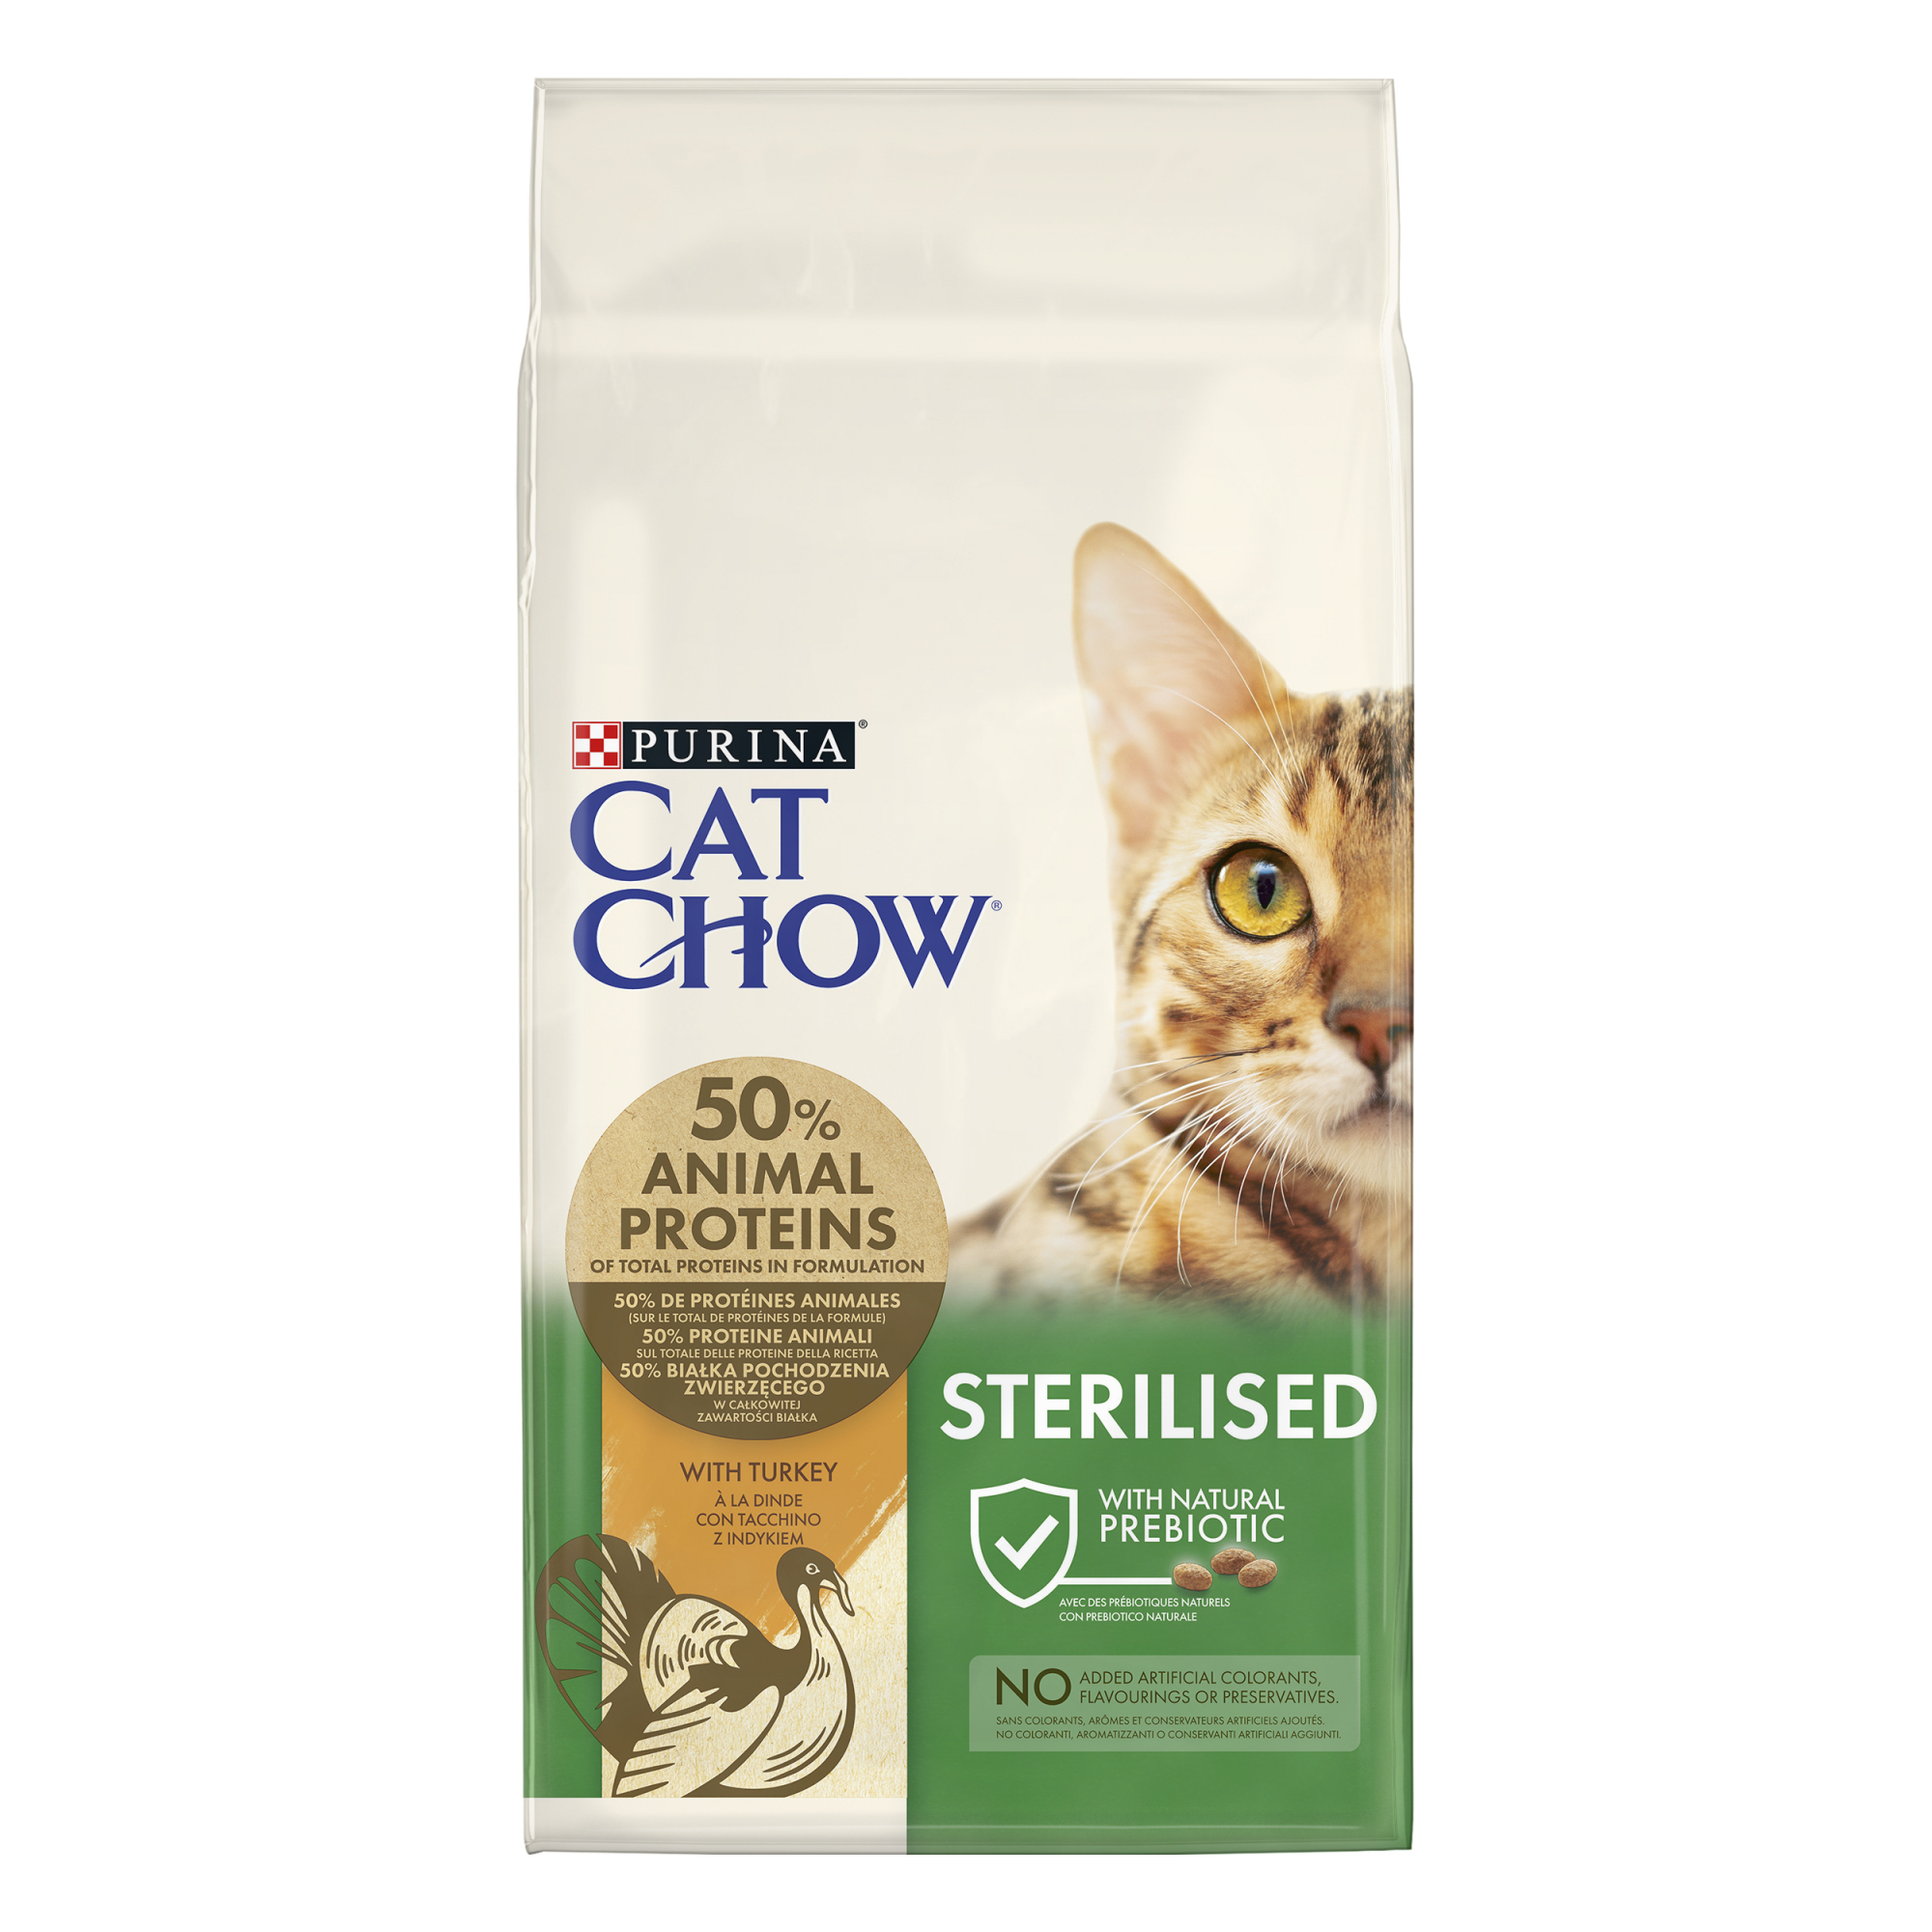 Cat Chow Sterilised, kalkoen